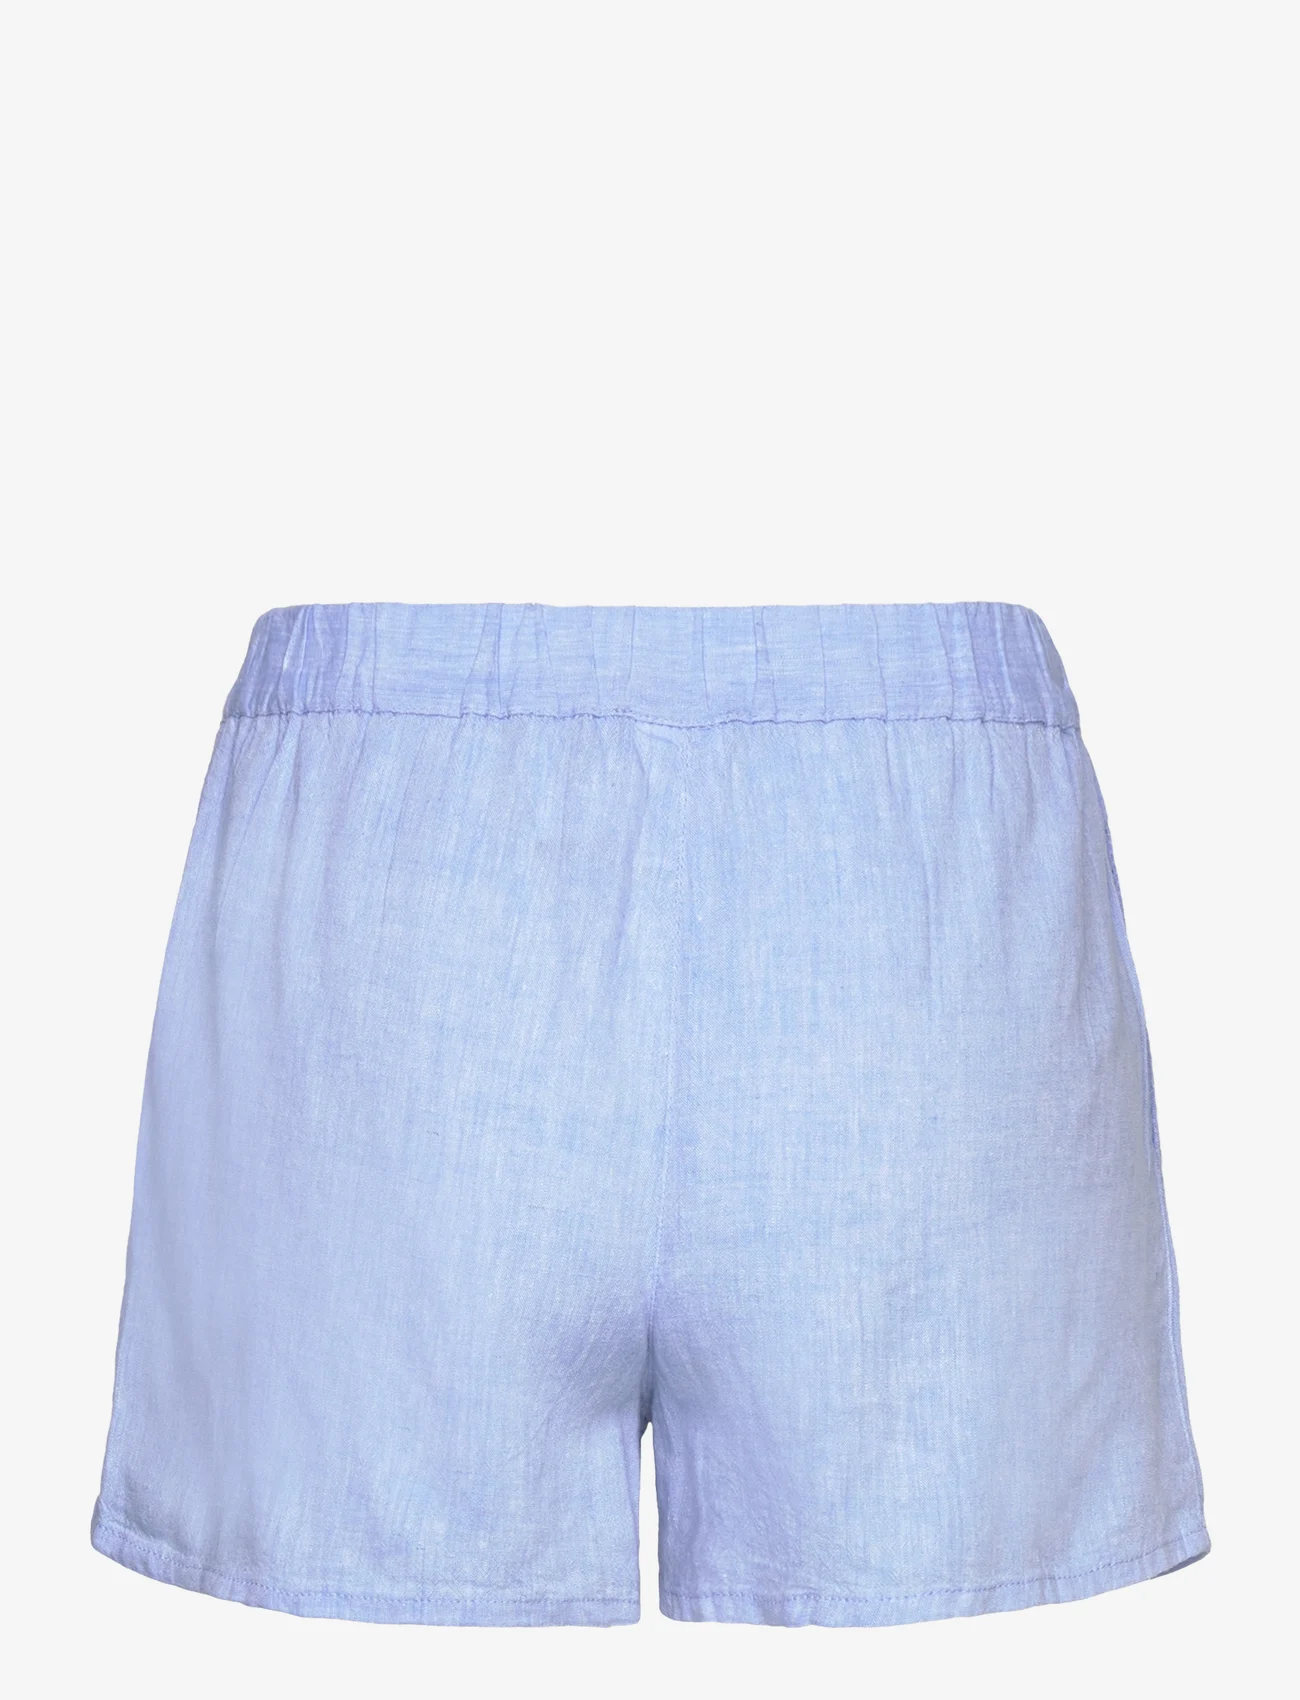 Etam - Justine - Short pyjama bottom - mažiausios kainos - sky blue - 1